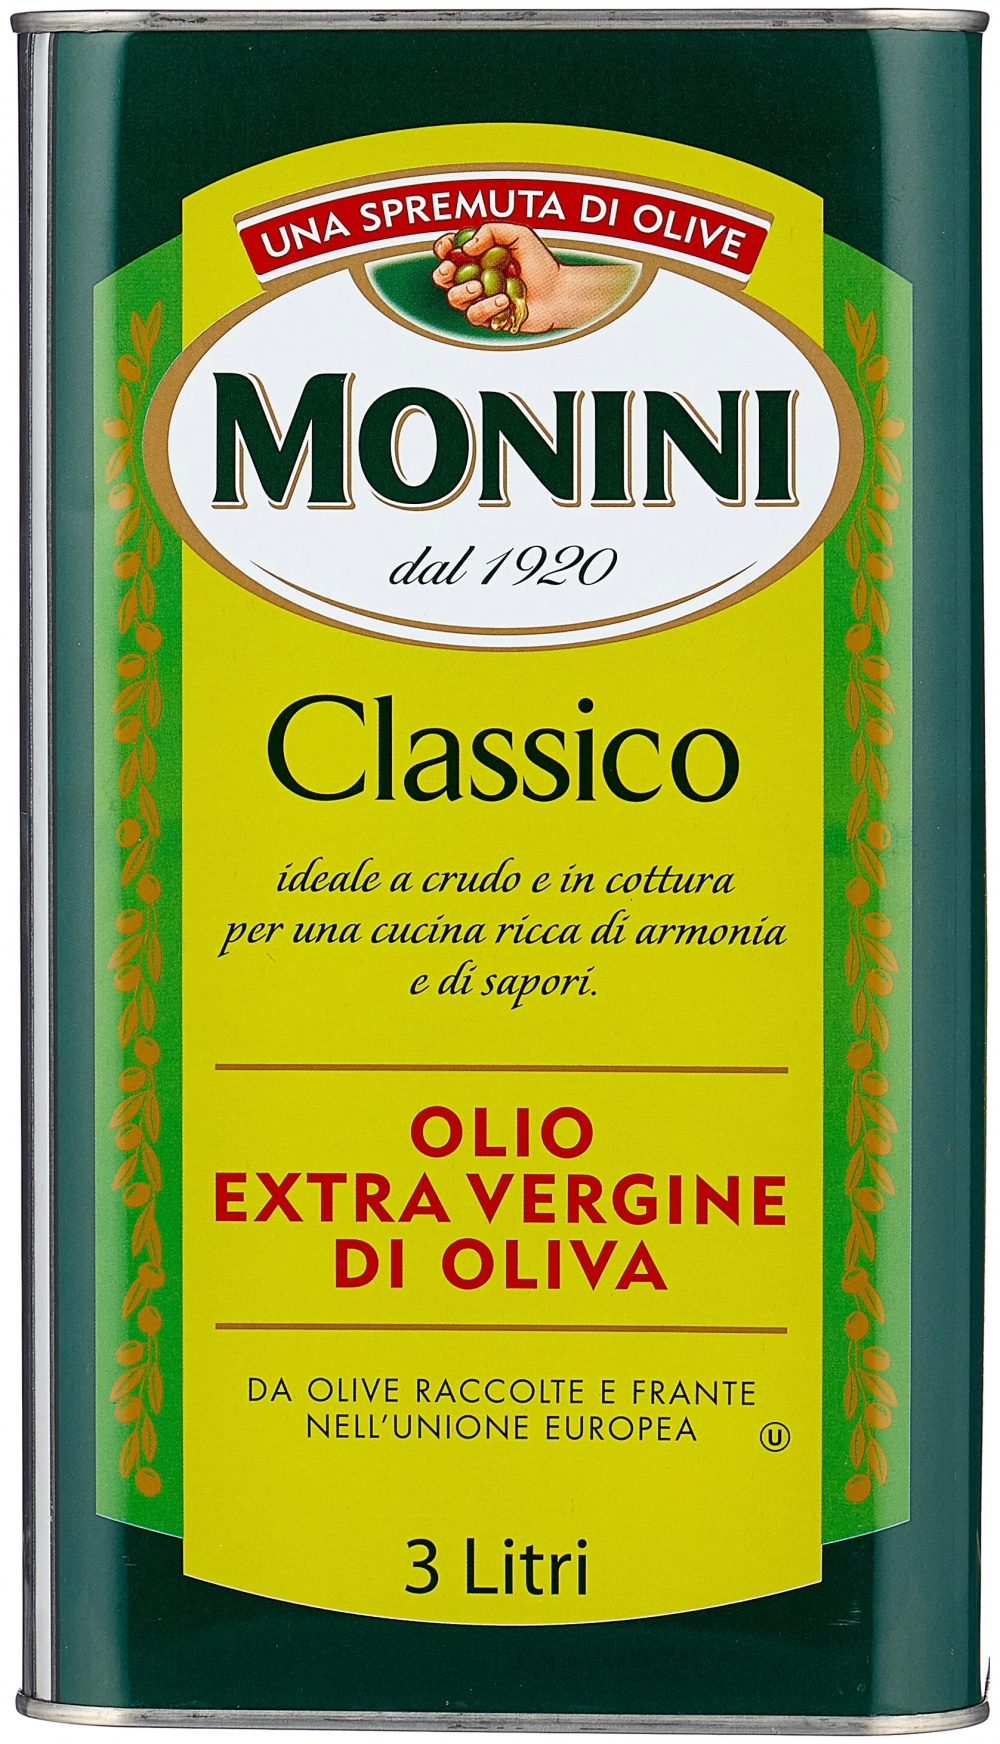 Масло оливковое monini купить